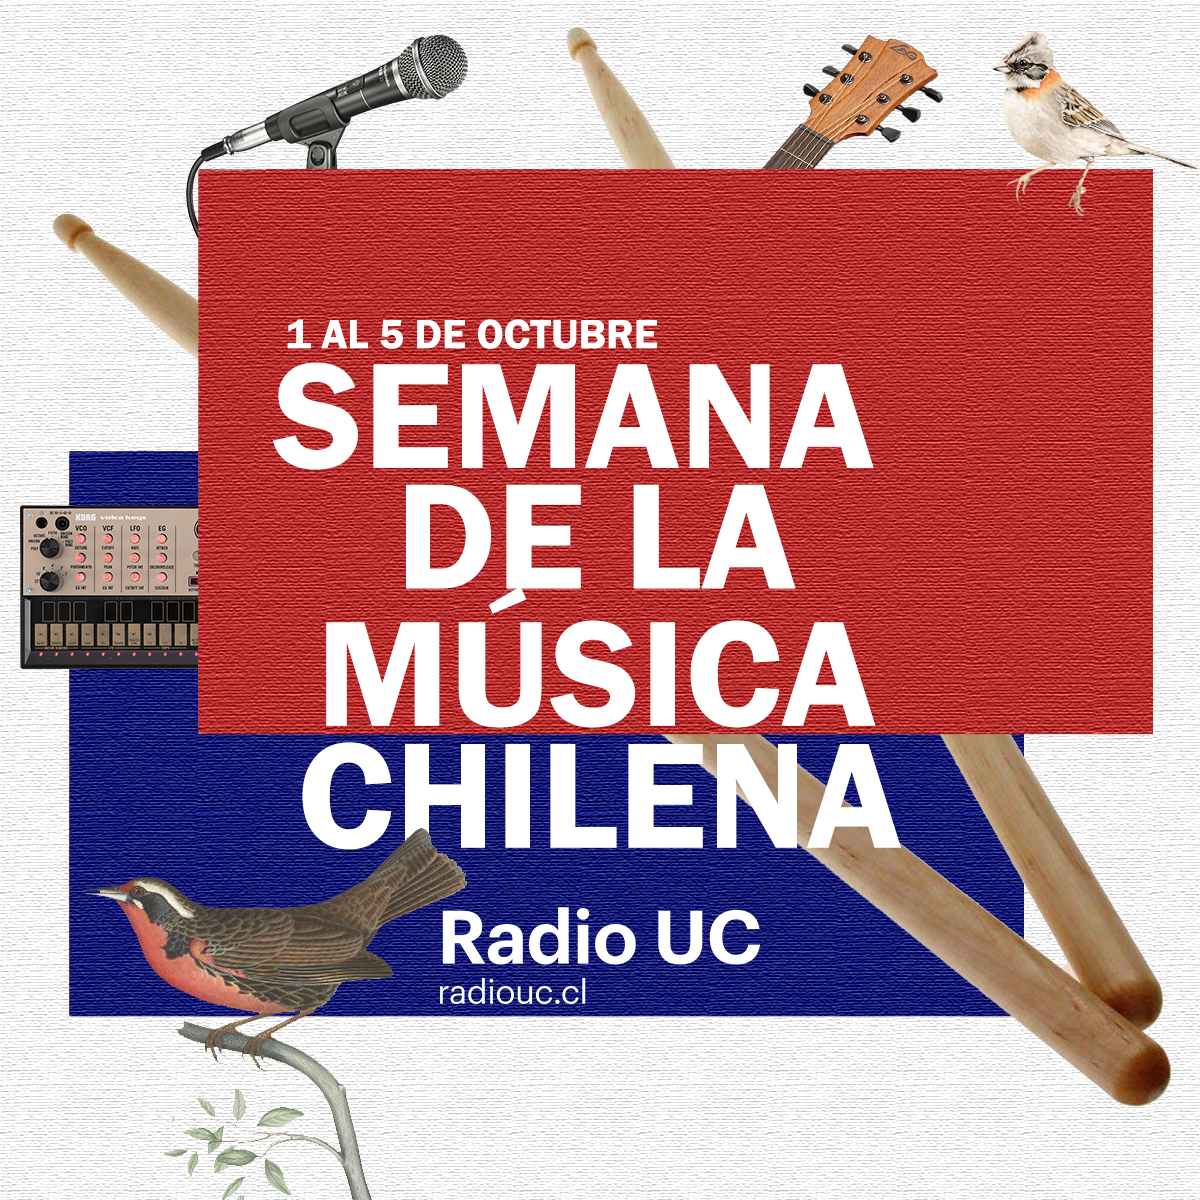 ¡No te pierdas la Semana de la Música Chilena en Radio UC!